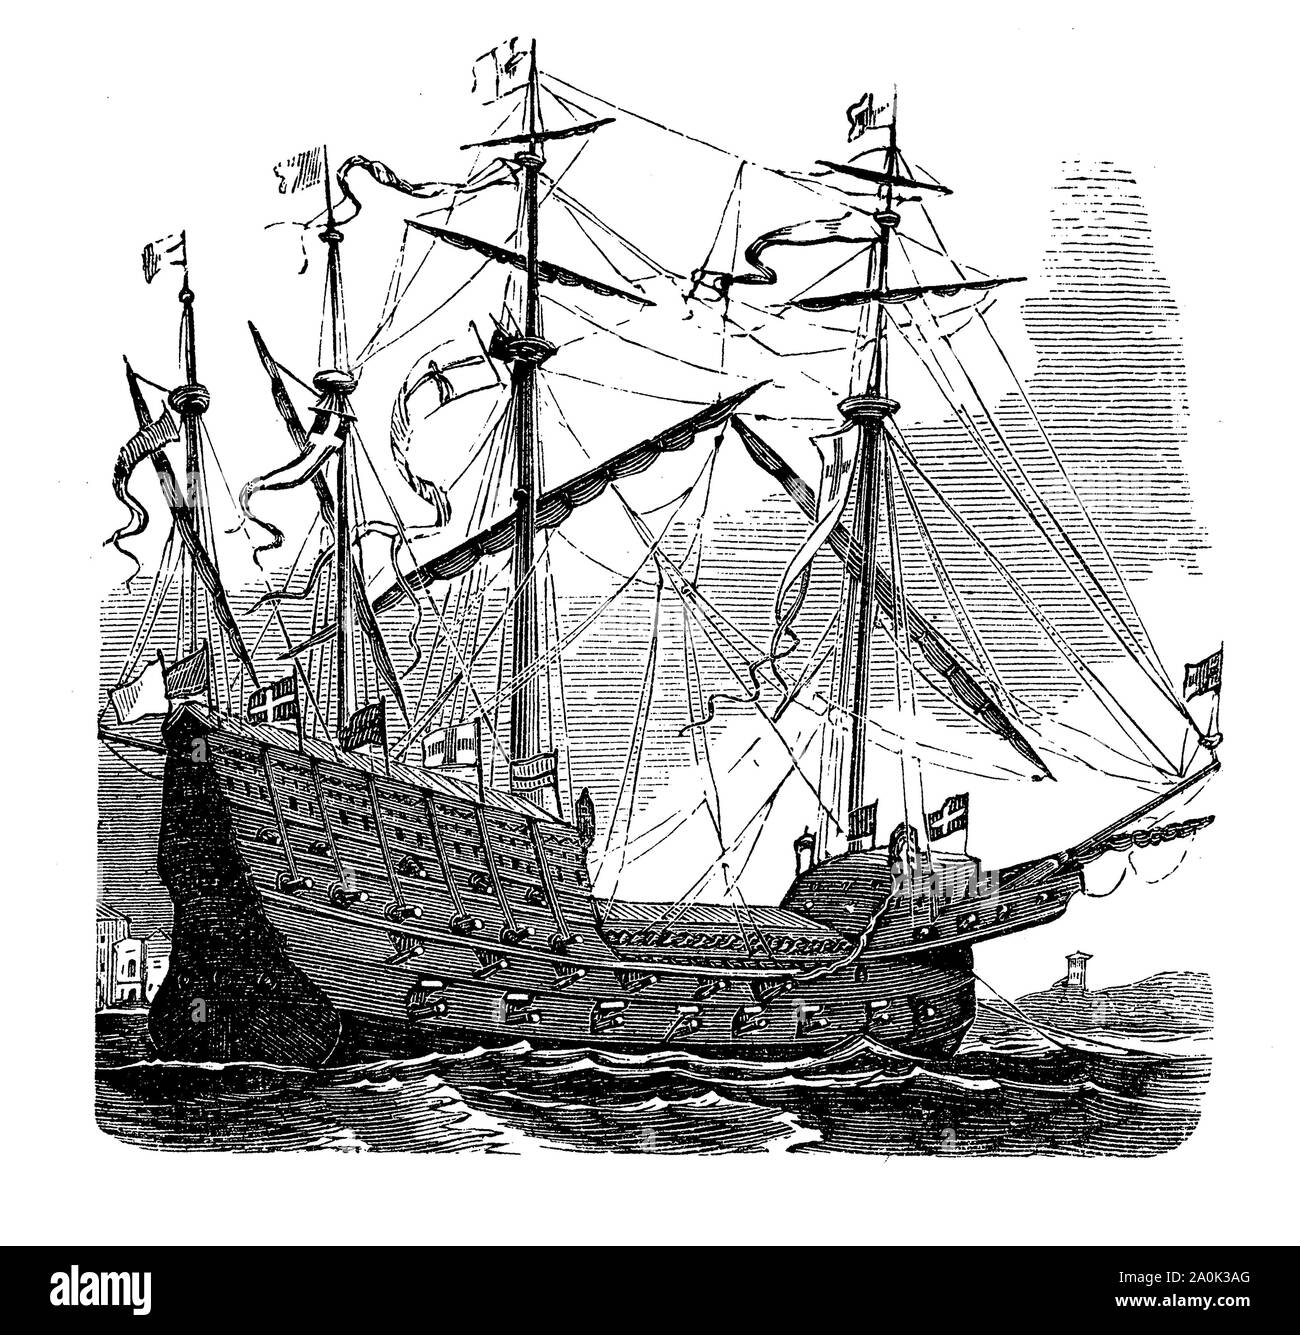 Enrico grazia un Dieu o ottimo Harry era una caracca inglese o grande nave del re in flotta nel XVI secolo, potente, grande, pesante corazzato ma con scarsa stabilità. Foto Stock